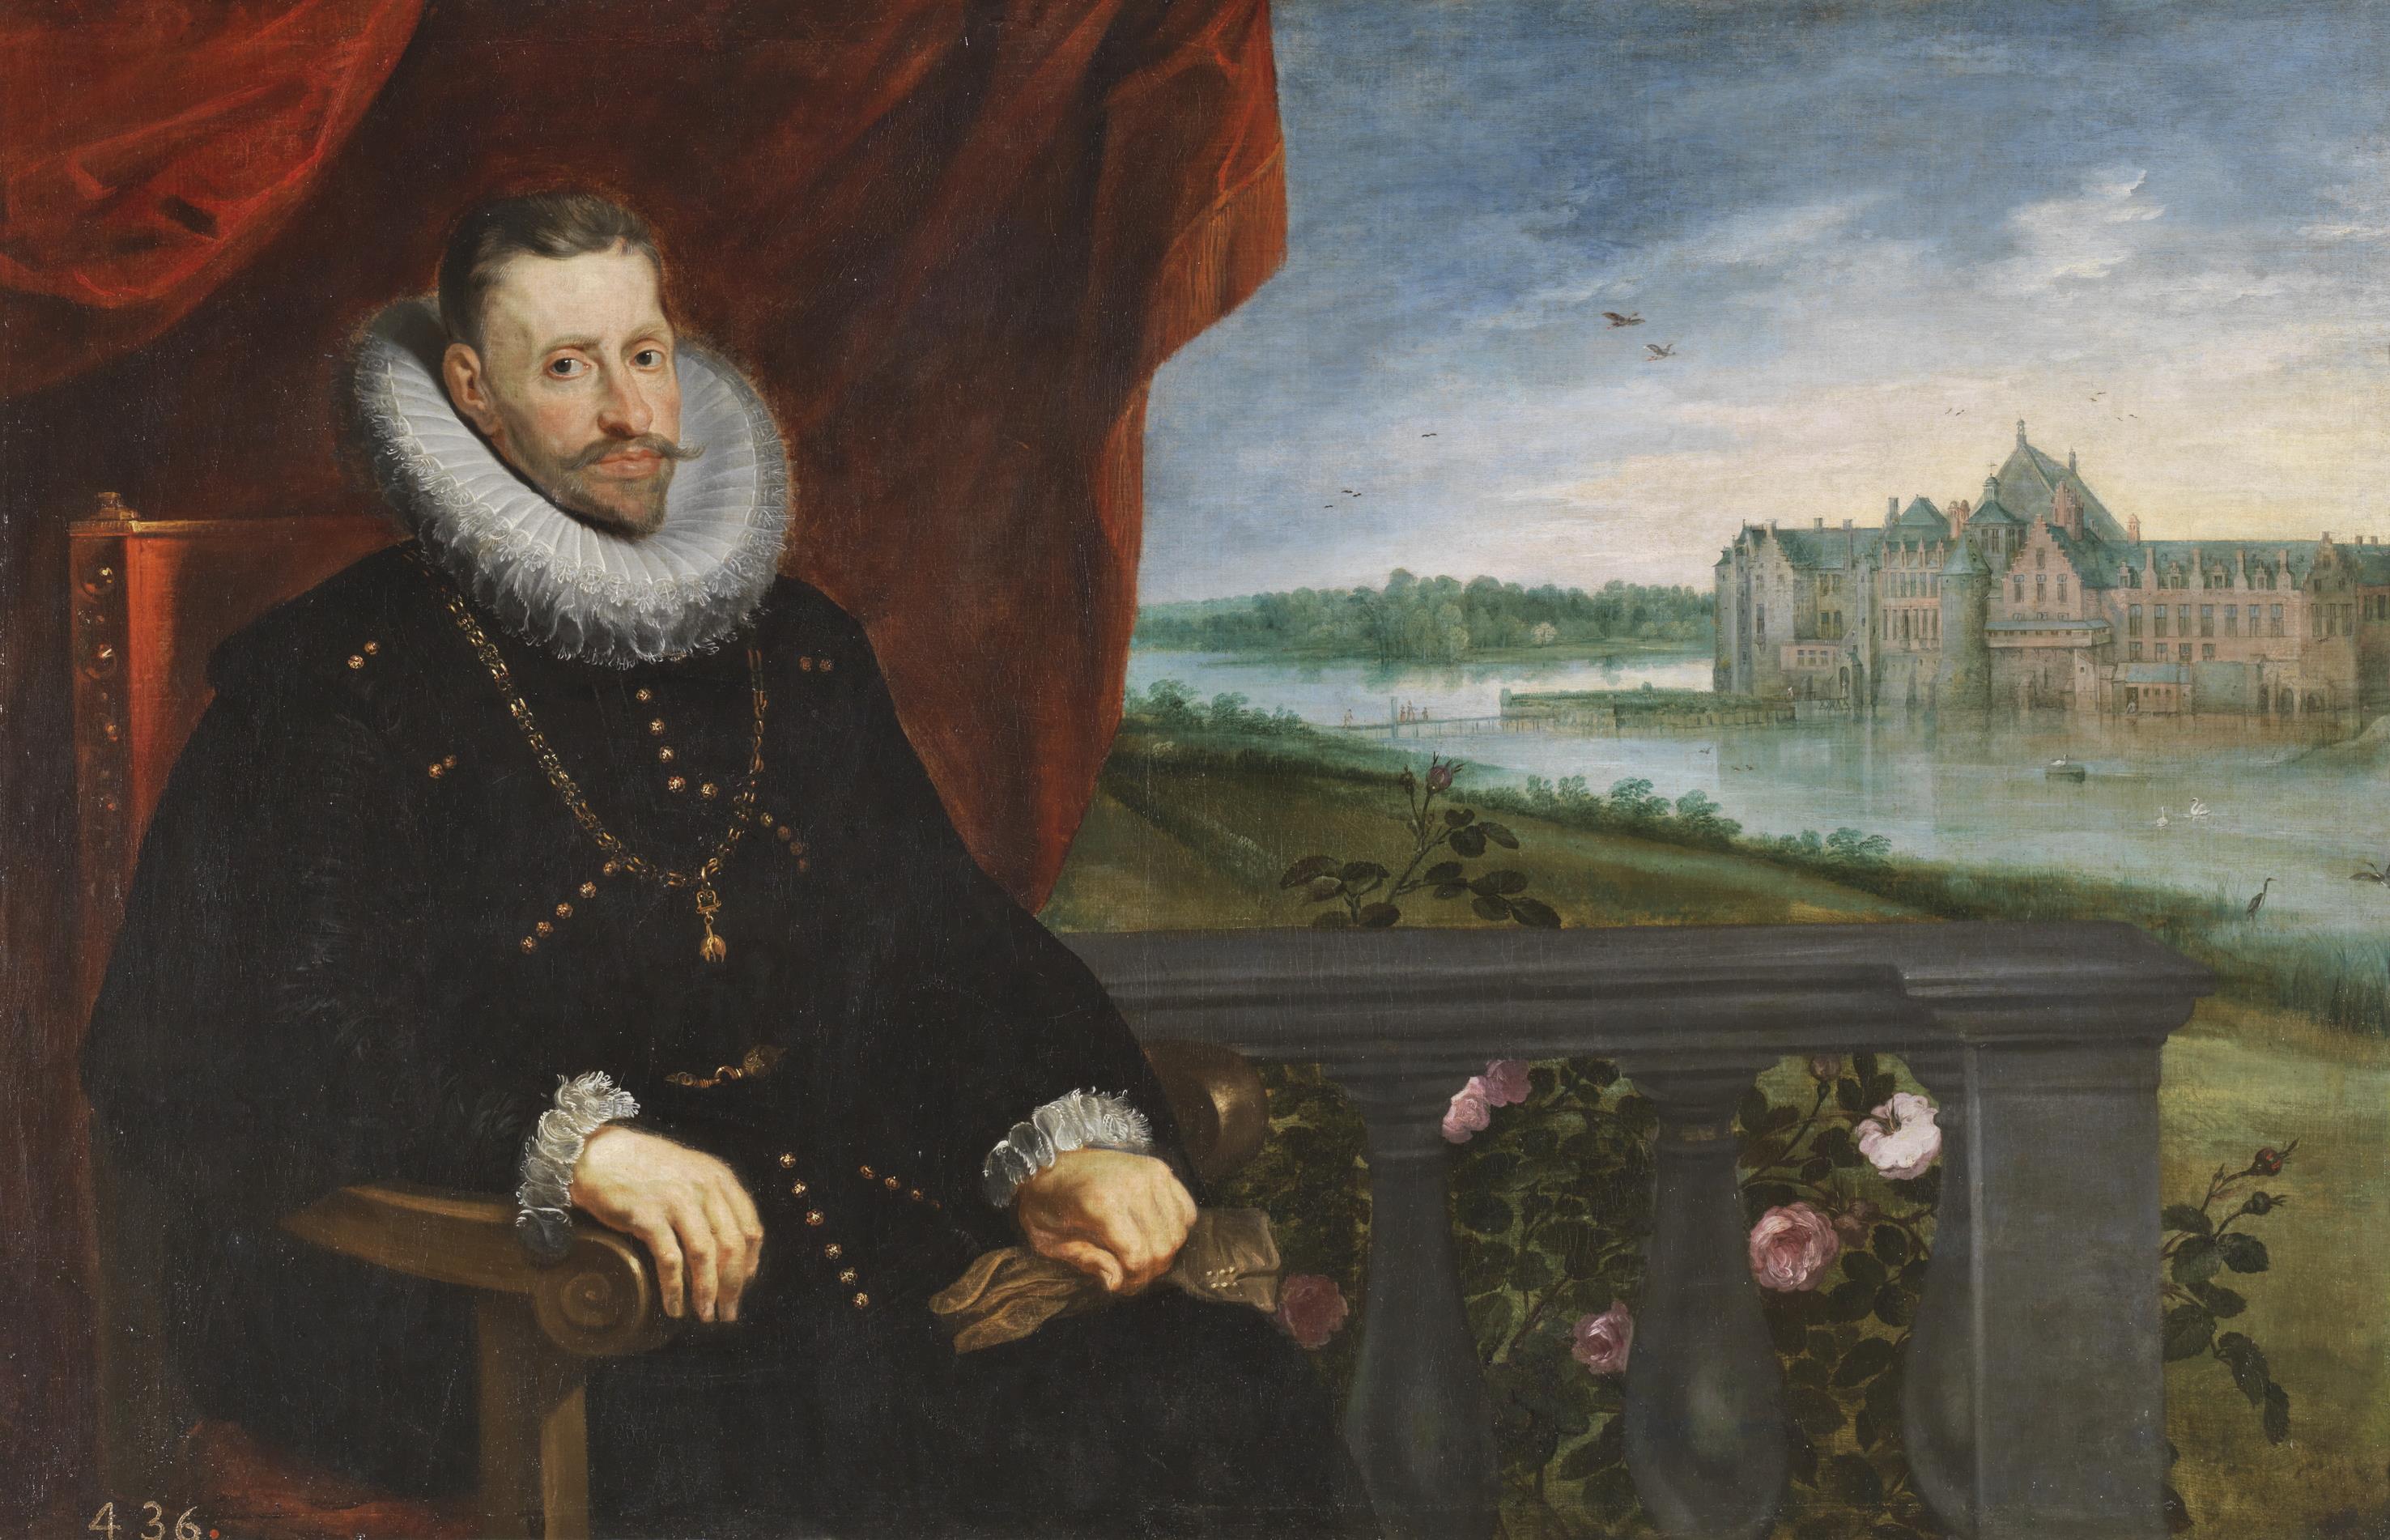 Pedro Pablo Rubens y Jan Brueghel el viejo: El Archiduque Alberto de Austria. Madrid, Museo Nacional del Prado.